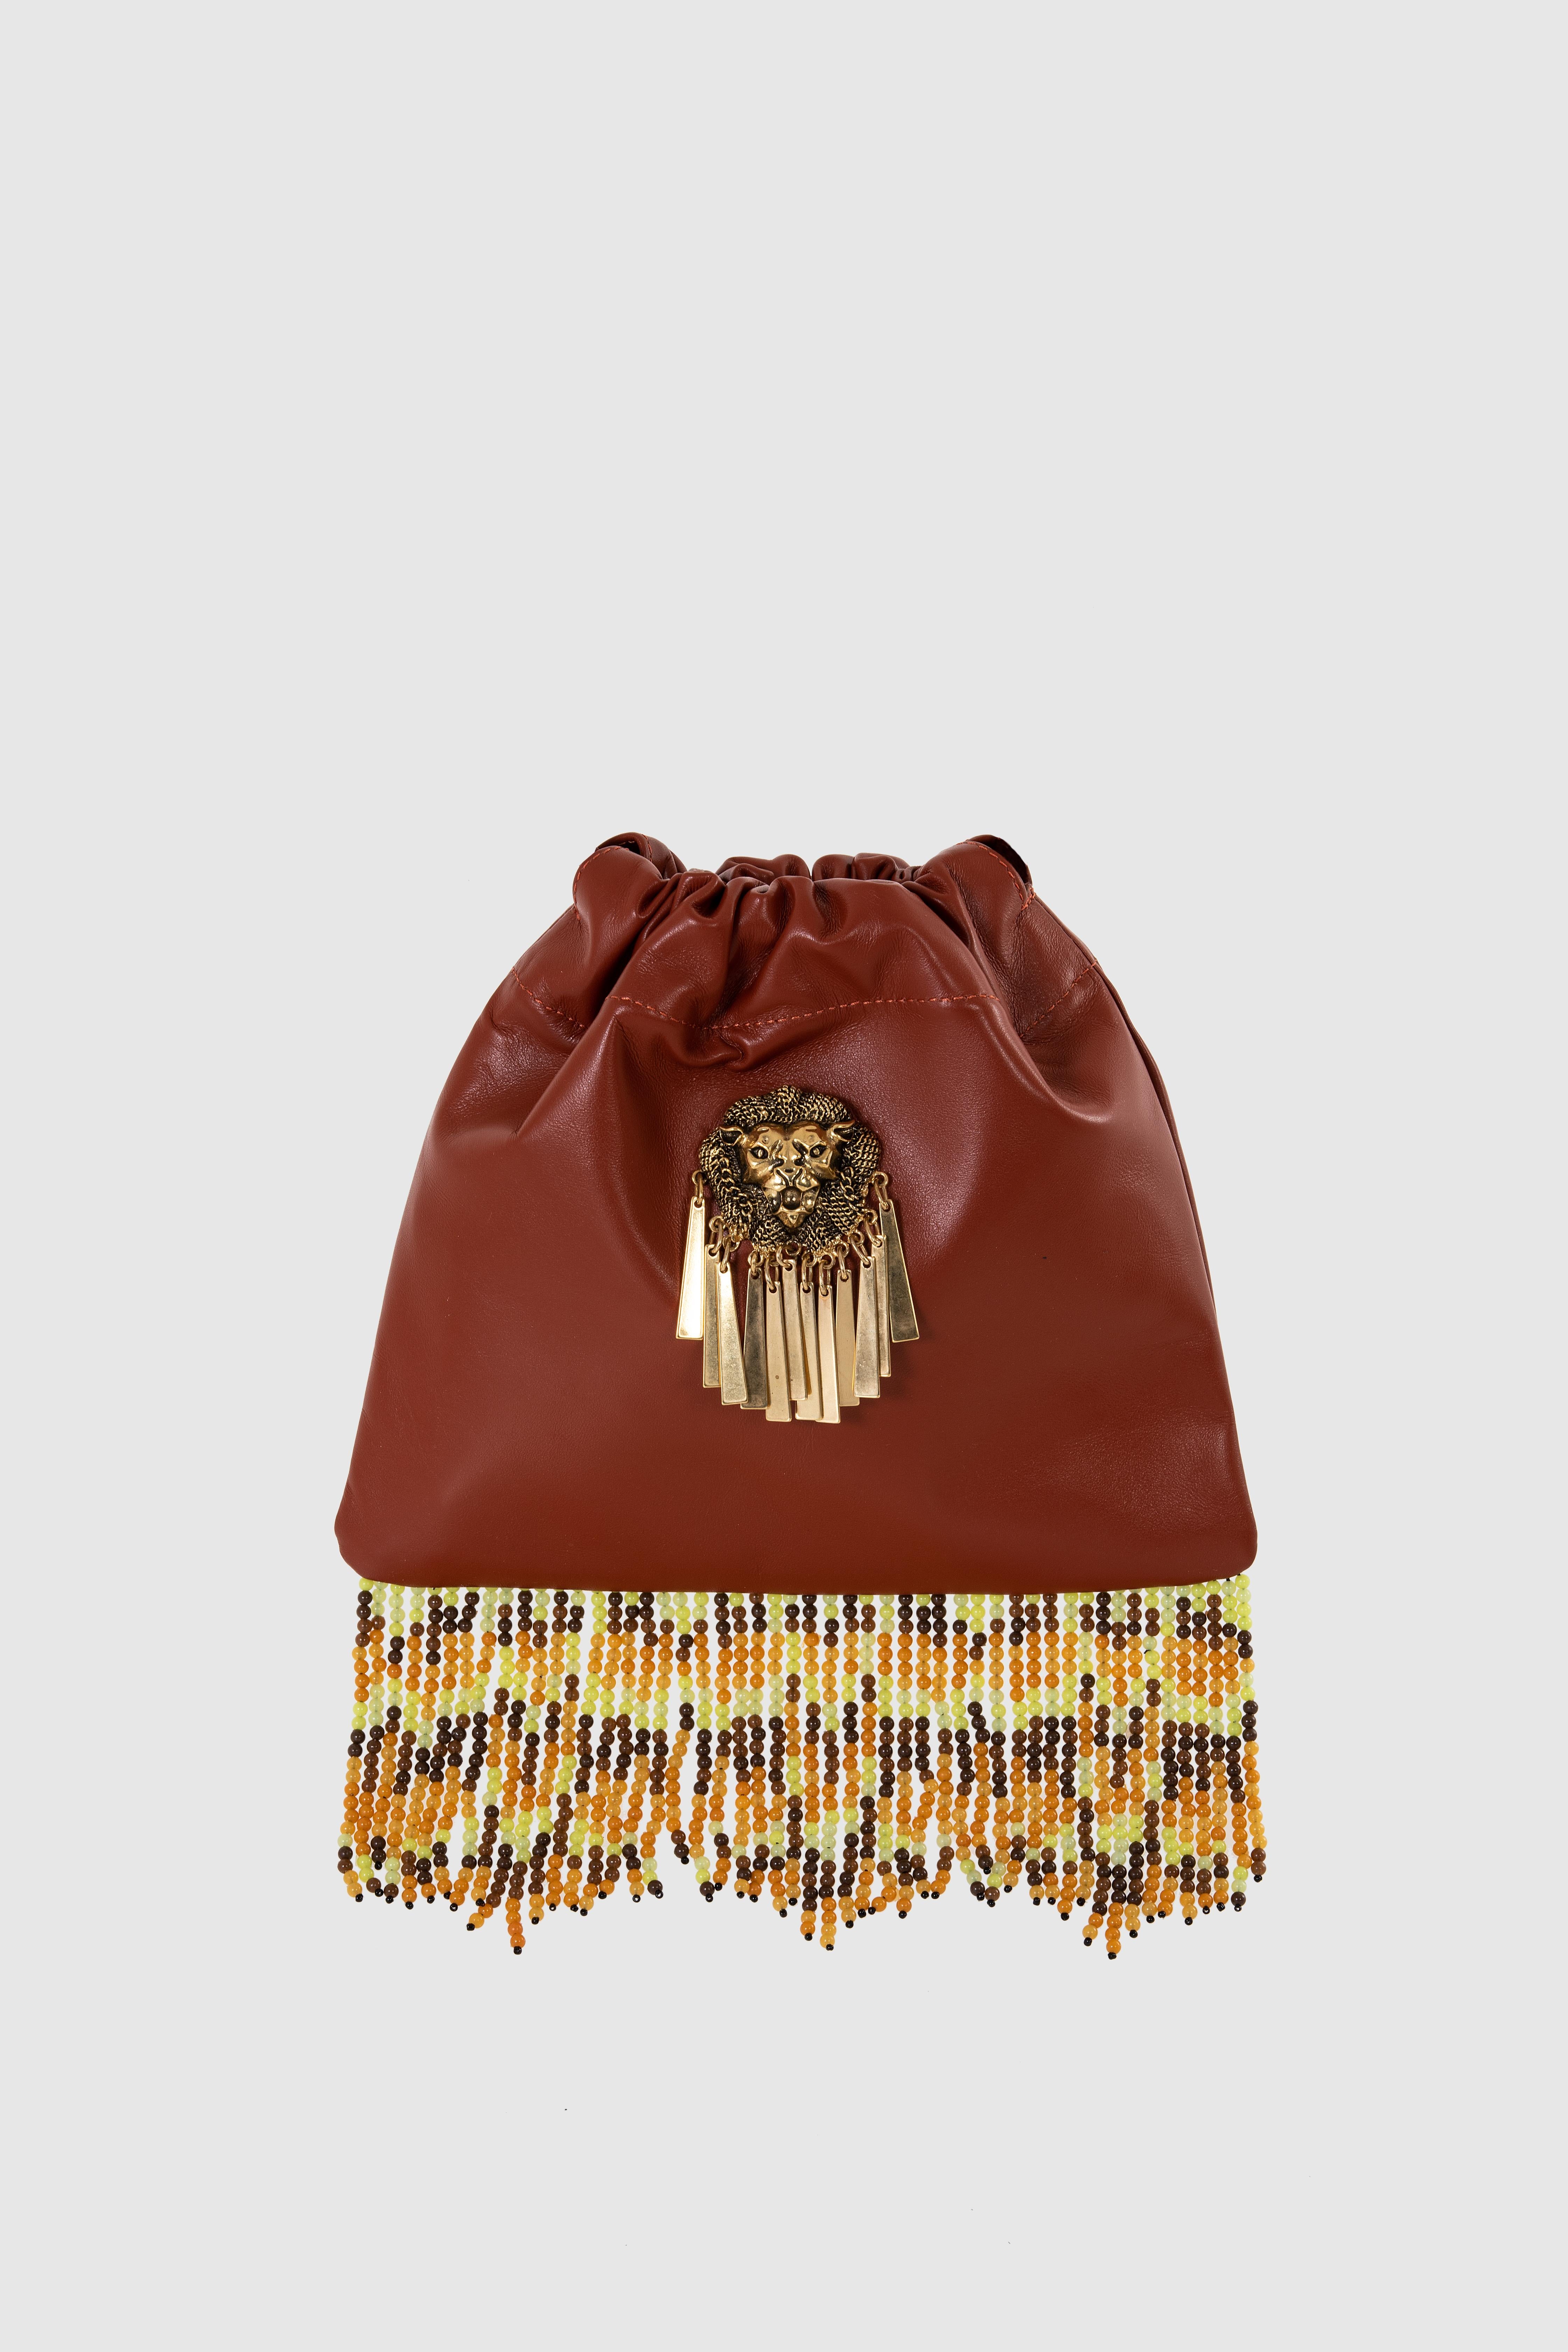 Women's or Men's Brown leather fringes satchel shoulder bag NWOT